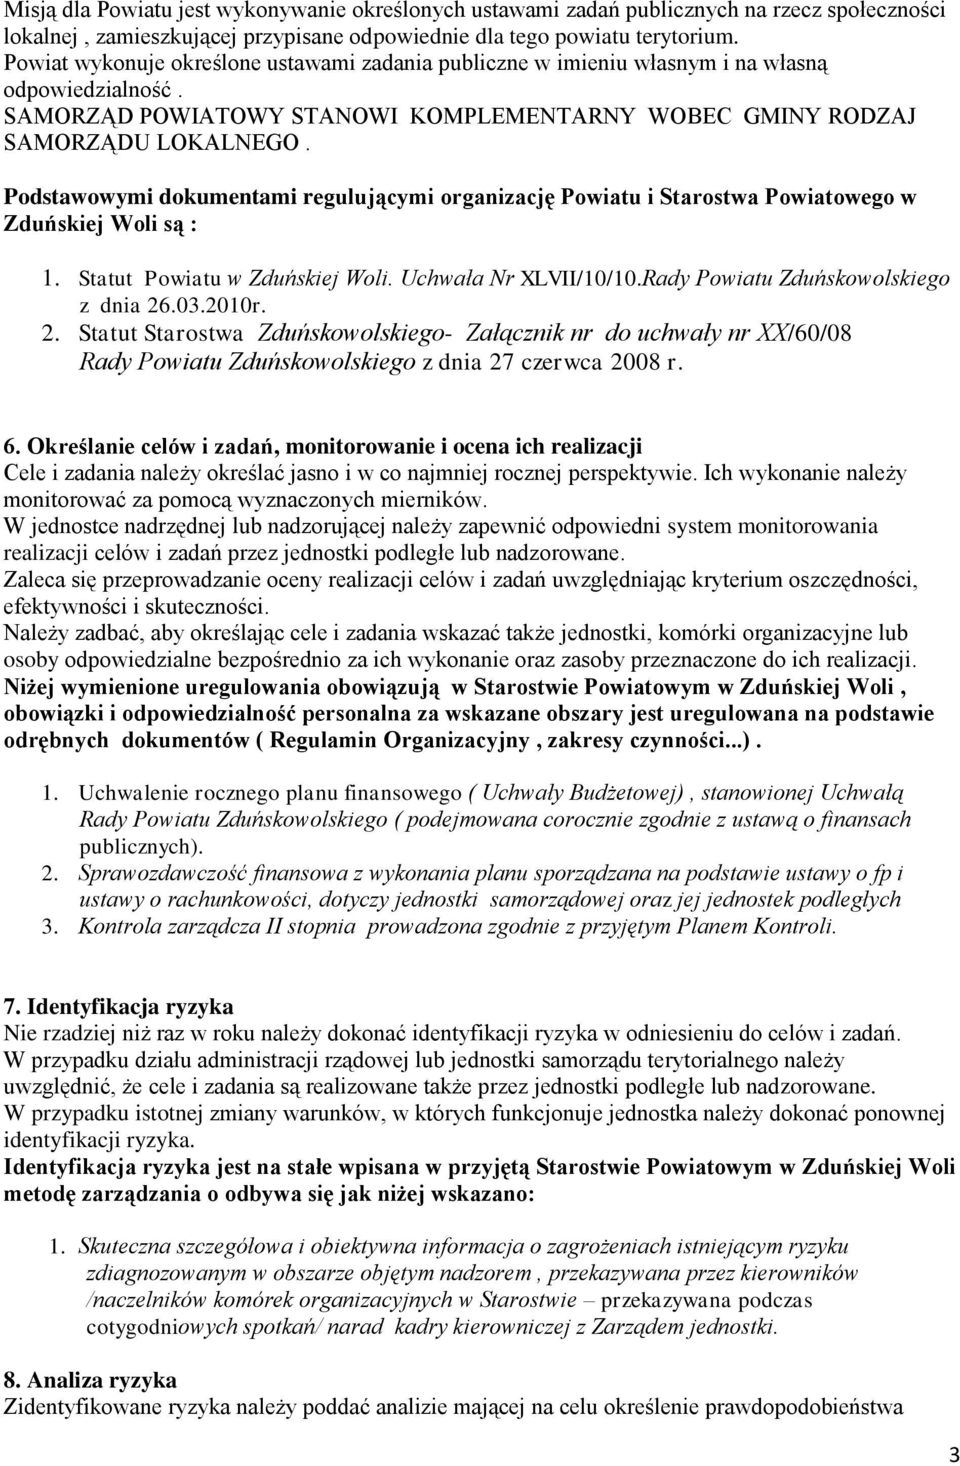 Podstawowymi dokumentami regulującymi organizację Powiatu i Starostwa Powiatowego w Zduńskiej Woli są : 1. Statut Powiatu w Zduńskiej Woli. Uchwała Nr XLVII/10/10.